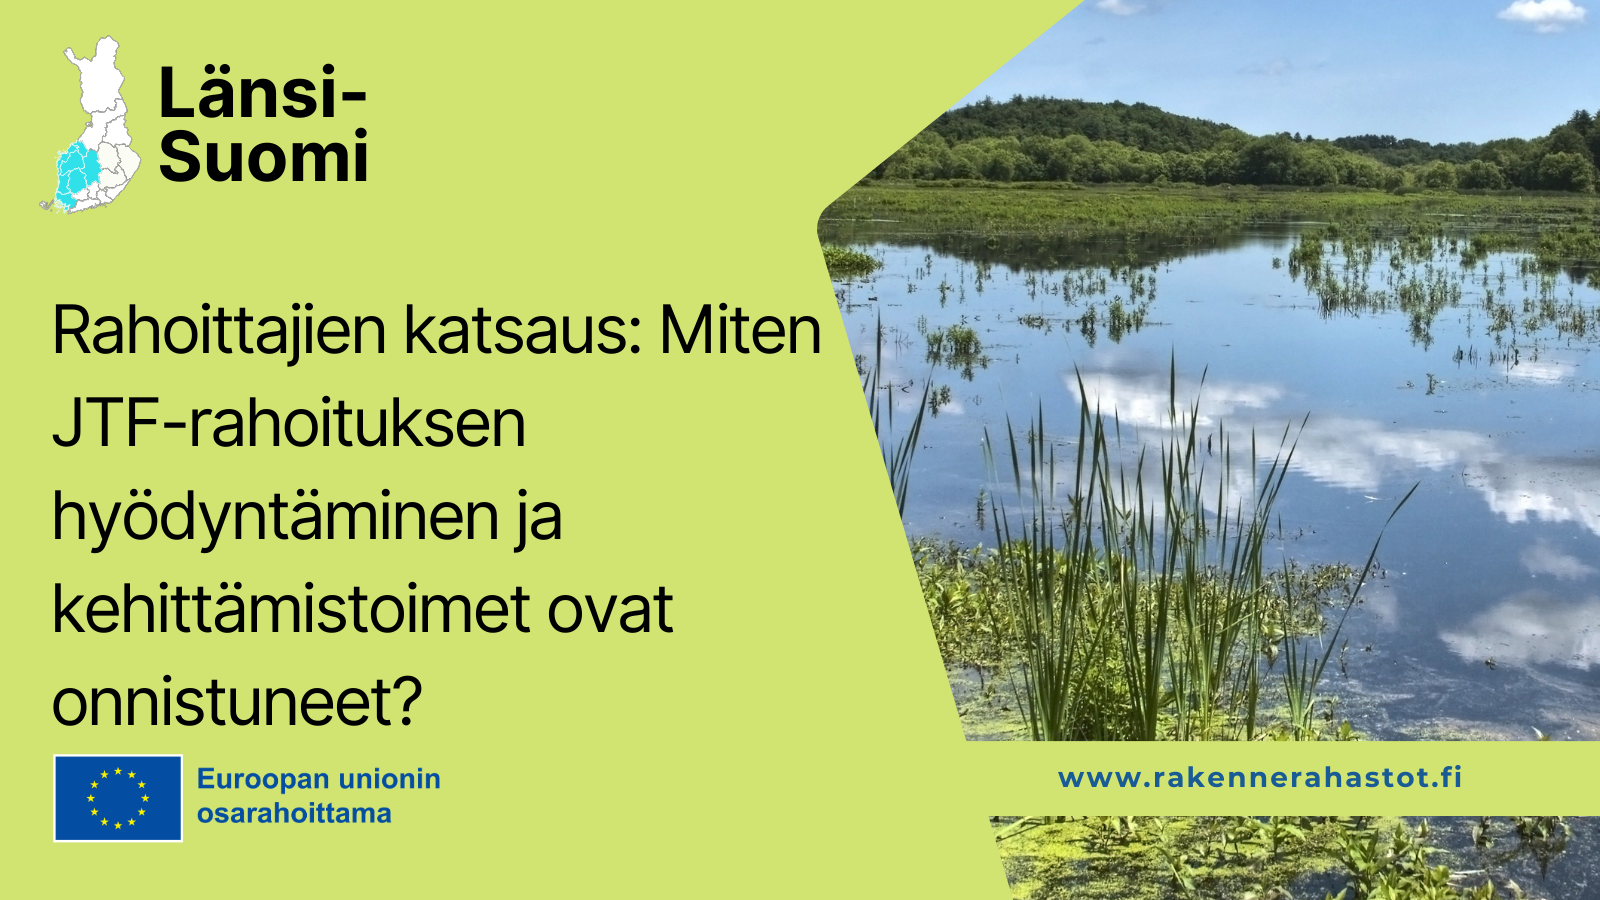 Länsi-Suomi, Rahoittajien katsaus: Miten JTF-rahoituksen hyödyntäminen ja kehittämistoimet ovat onnistuneet, EU-lippulogo tekstillä Euroopan unionin osarahoittama sekä kuva järvialueesta.